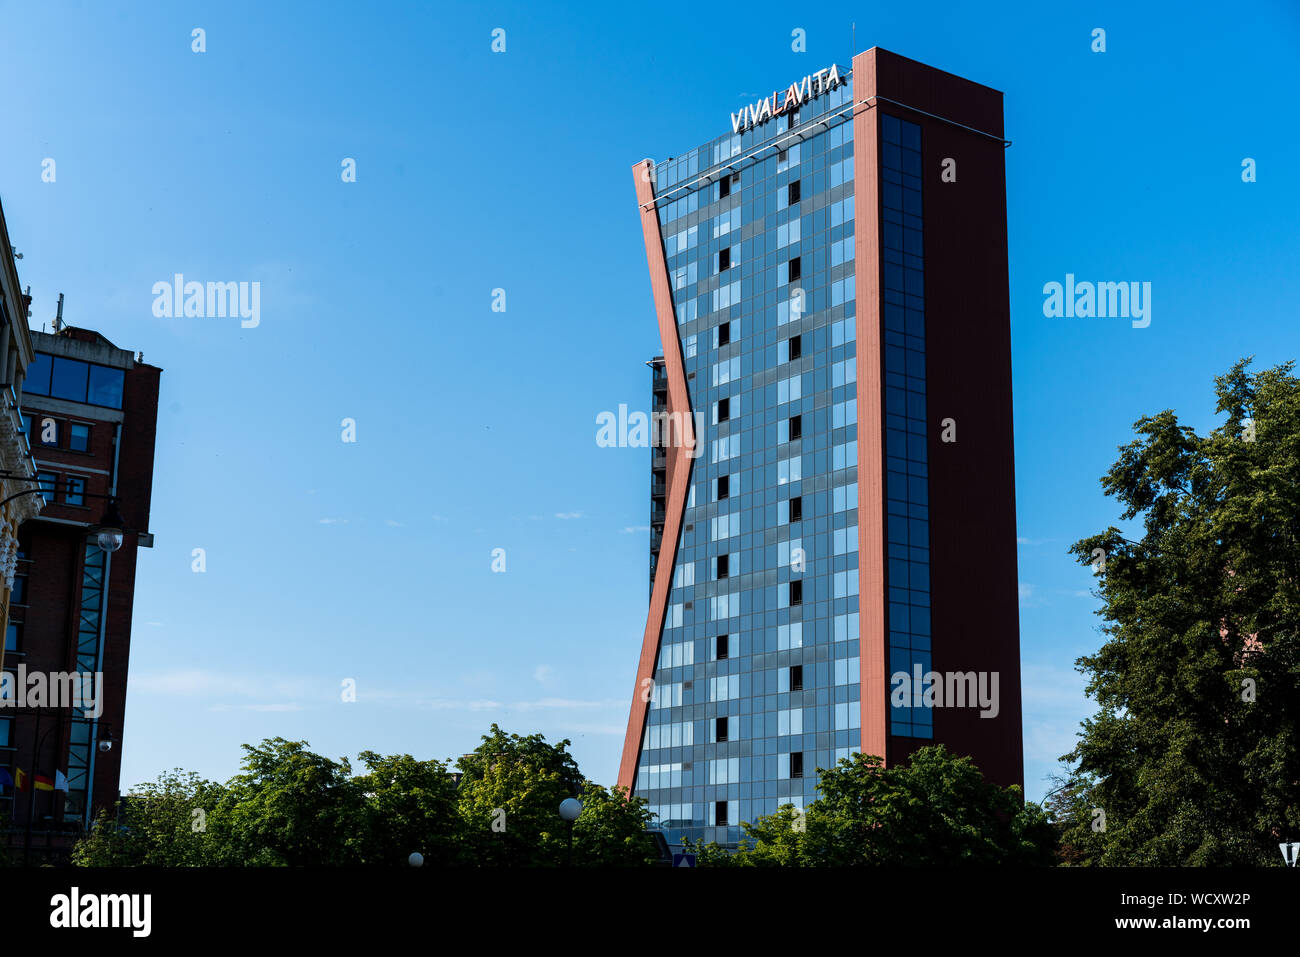 Klaipeda, Lituania - 28 Luglio 2019: Ristorante Vivalavita edificio nel centro di Klaipeda Foto Stock